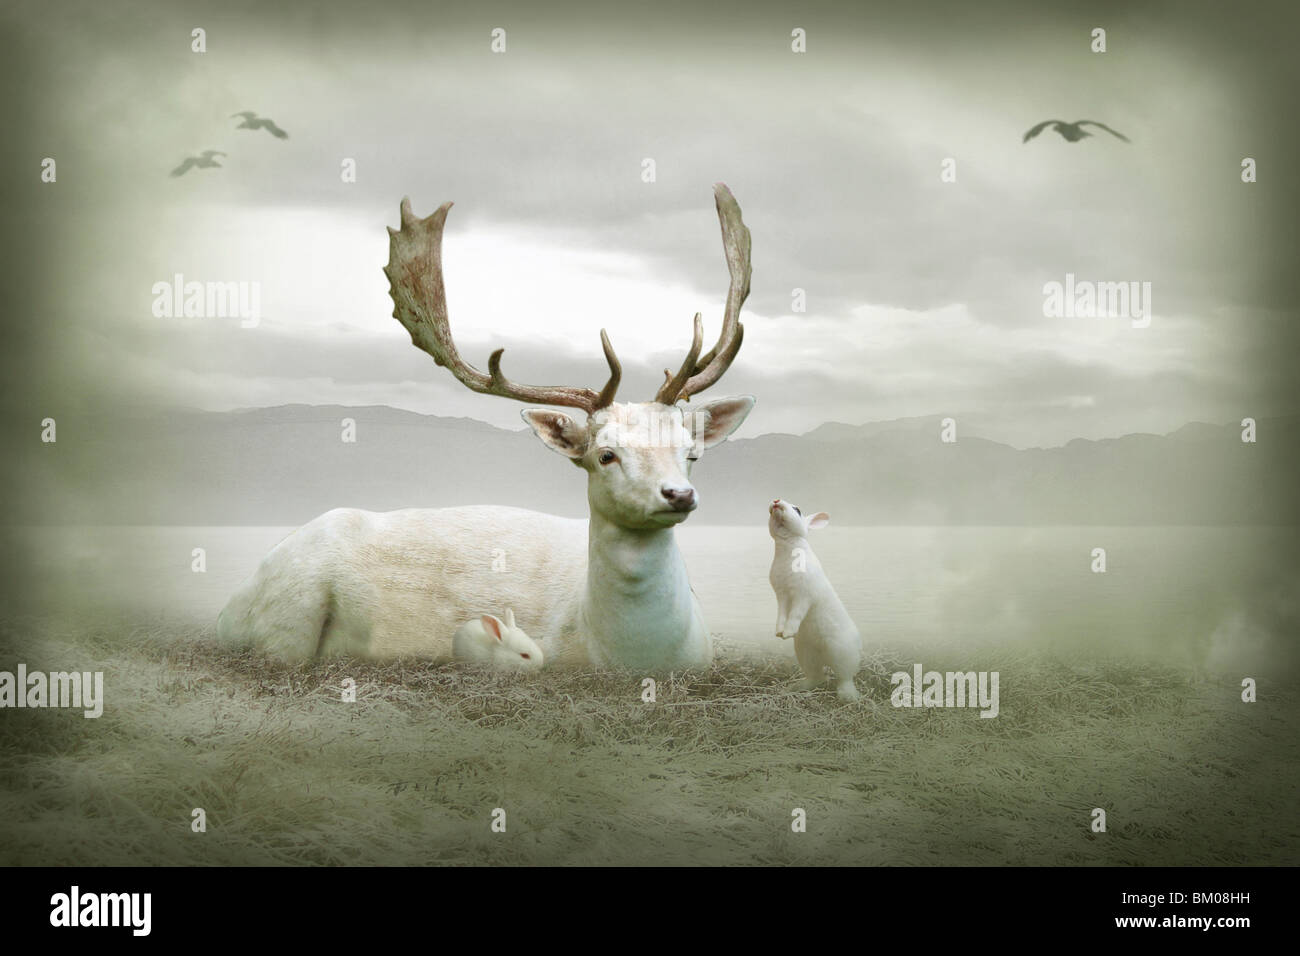 El ciervo blanco sentado con conejos blancos Foto de stock